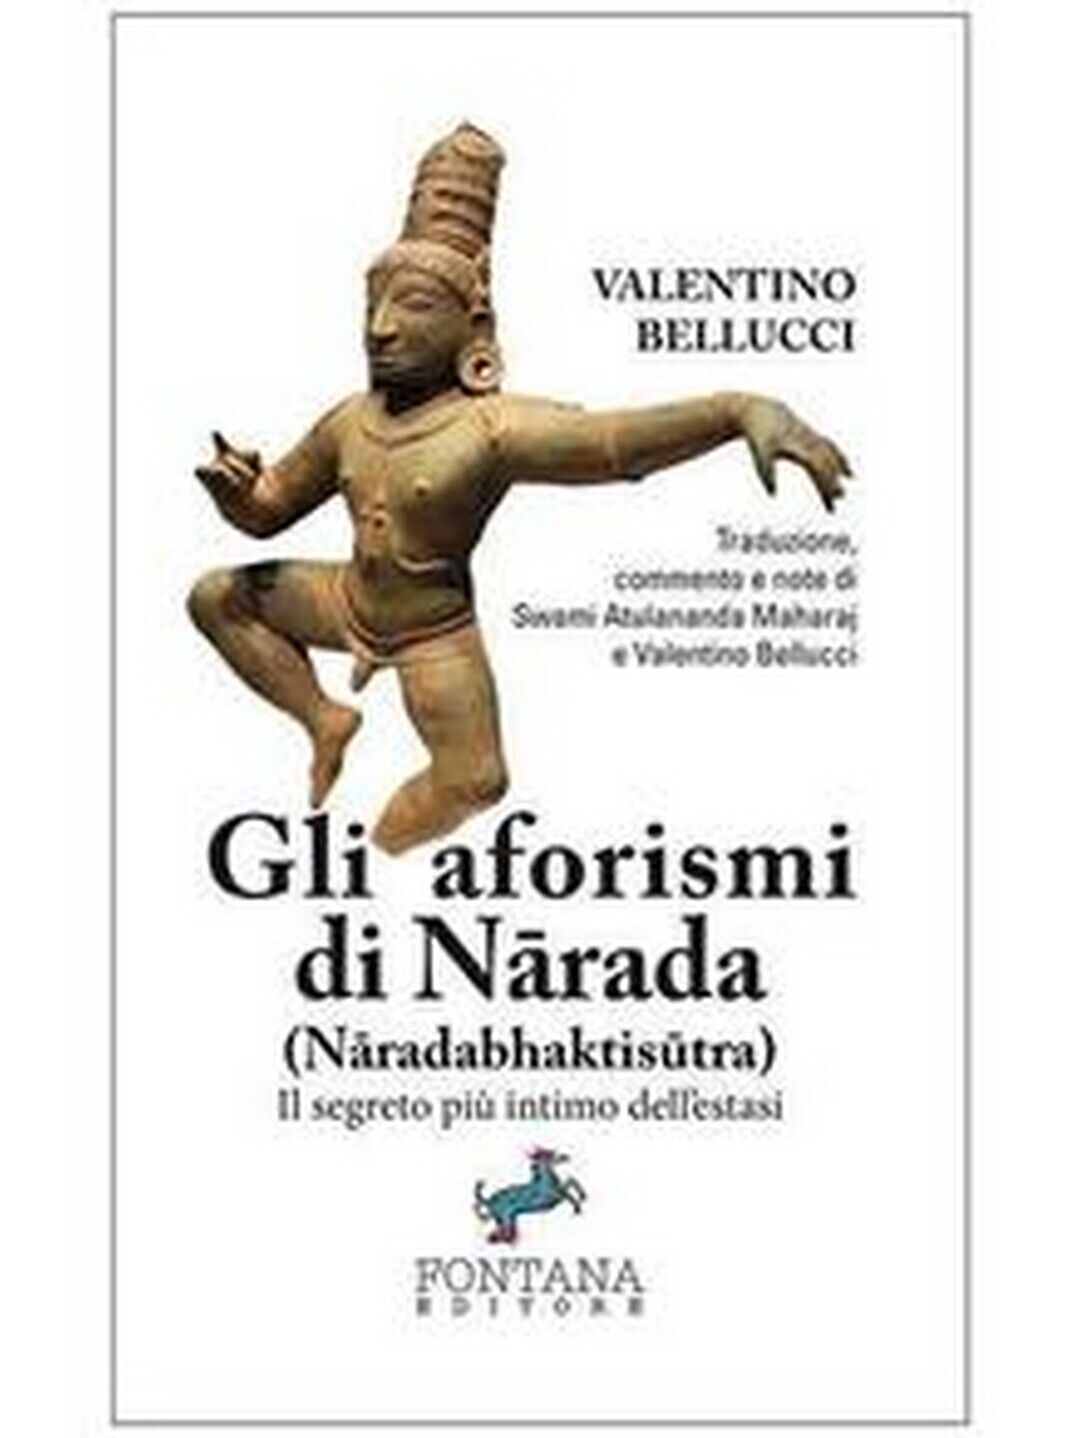 Gli aforismi di N?rada  di Valentino Bellucci,  2019,  Fontana Editore libro usato